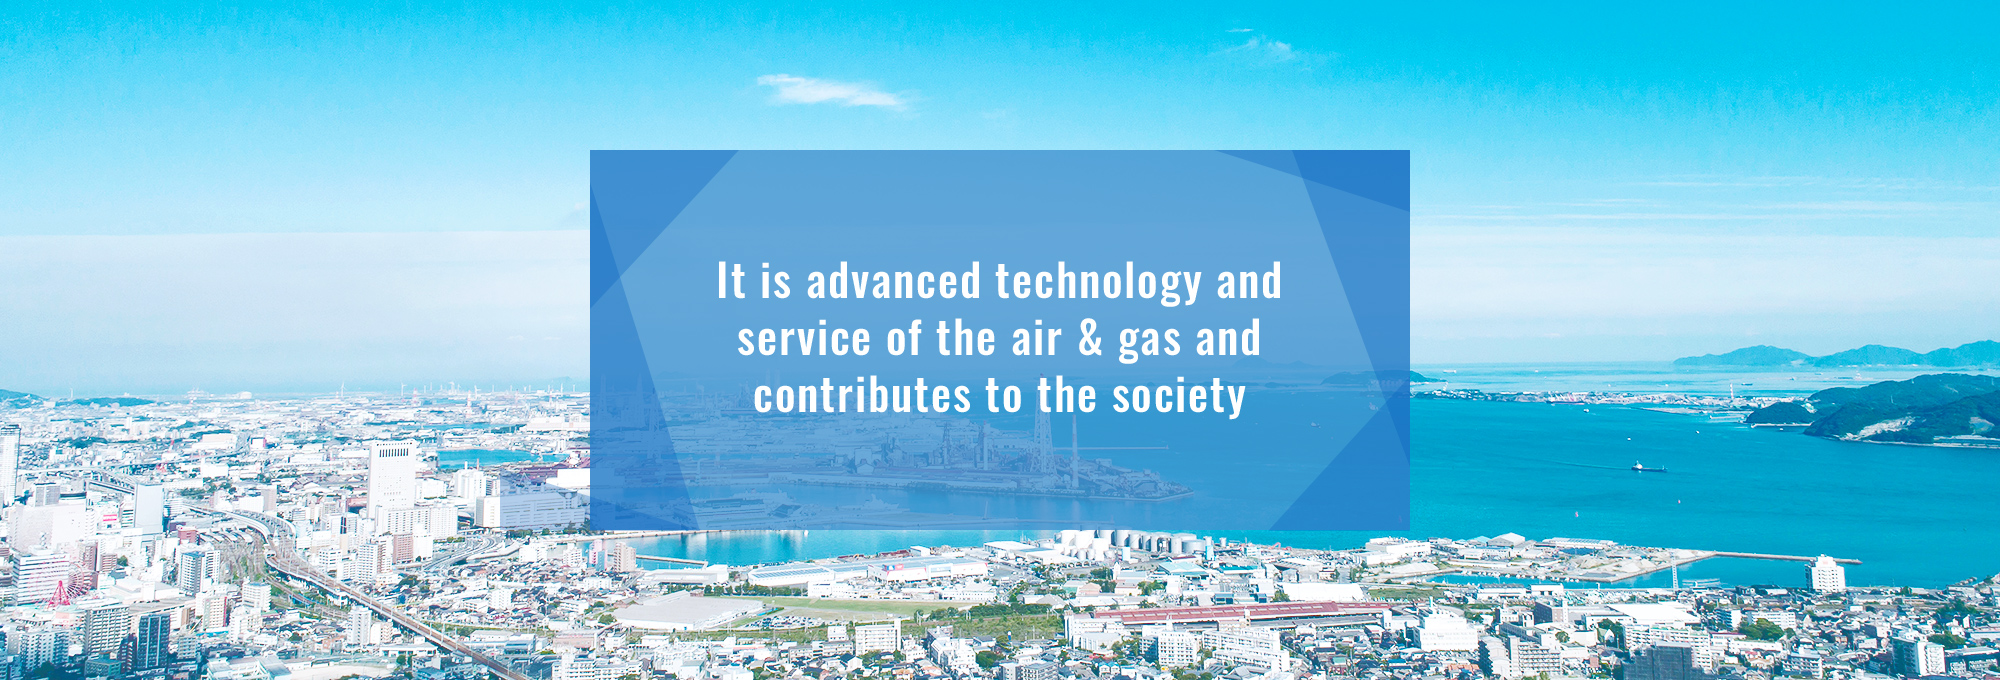 空気・ガスの技術とサービスで産業・官庁・アカデミーを支援